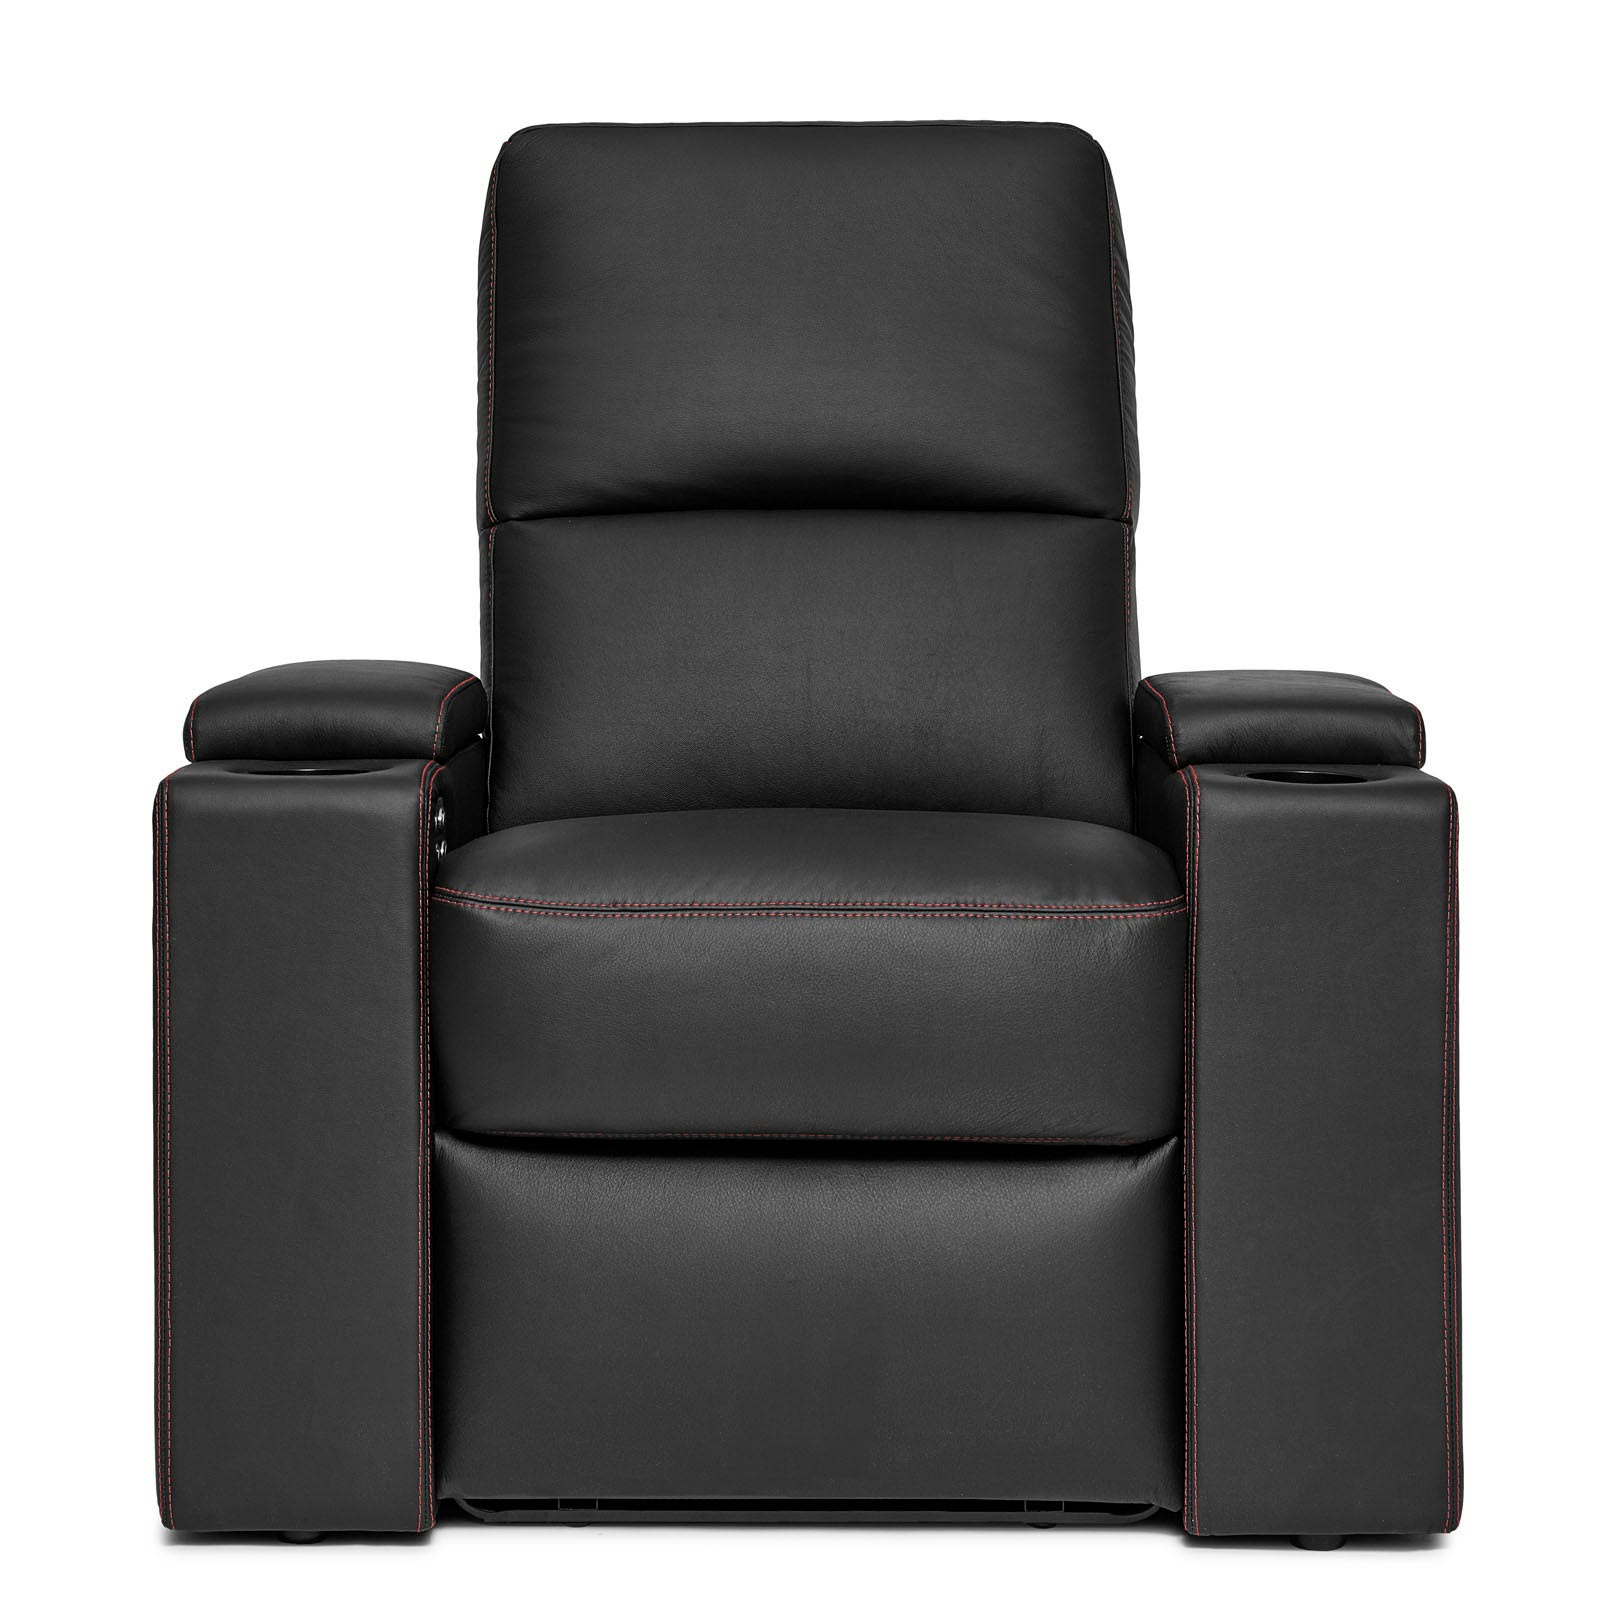 D Box кресла. Кресло удлиненное для ног. Кресло forum d.